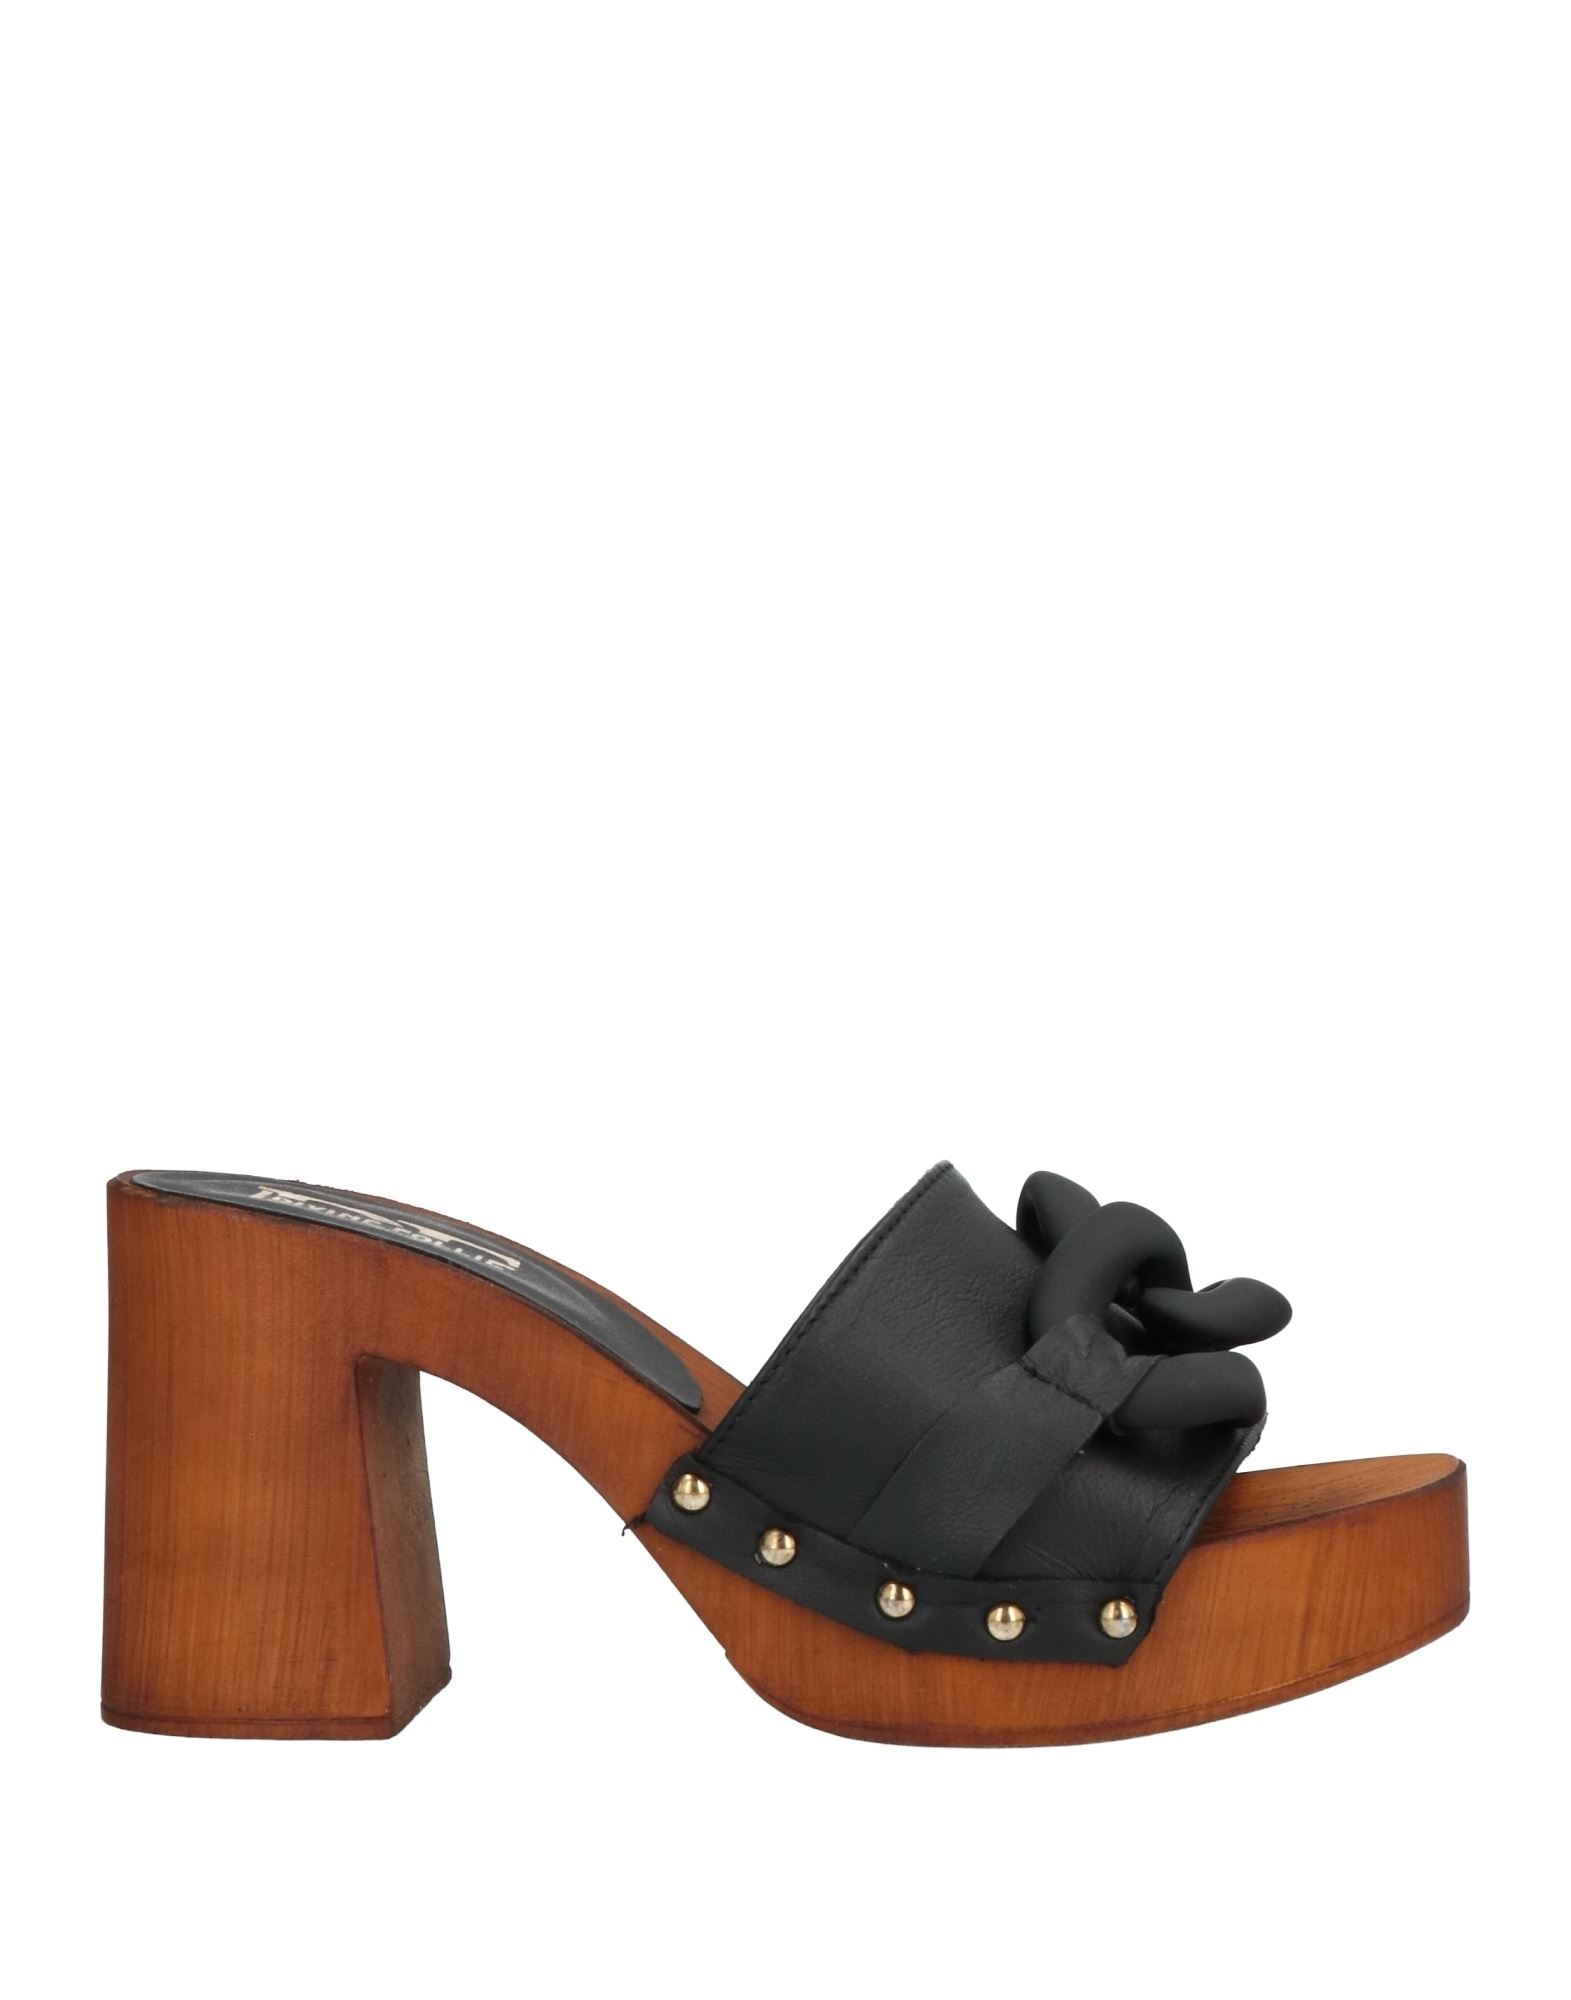 Divine Follie Woman Mules & Clogs Black Size 6 Soft Leather